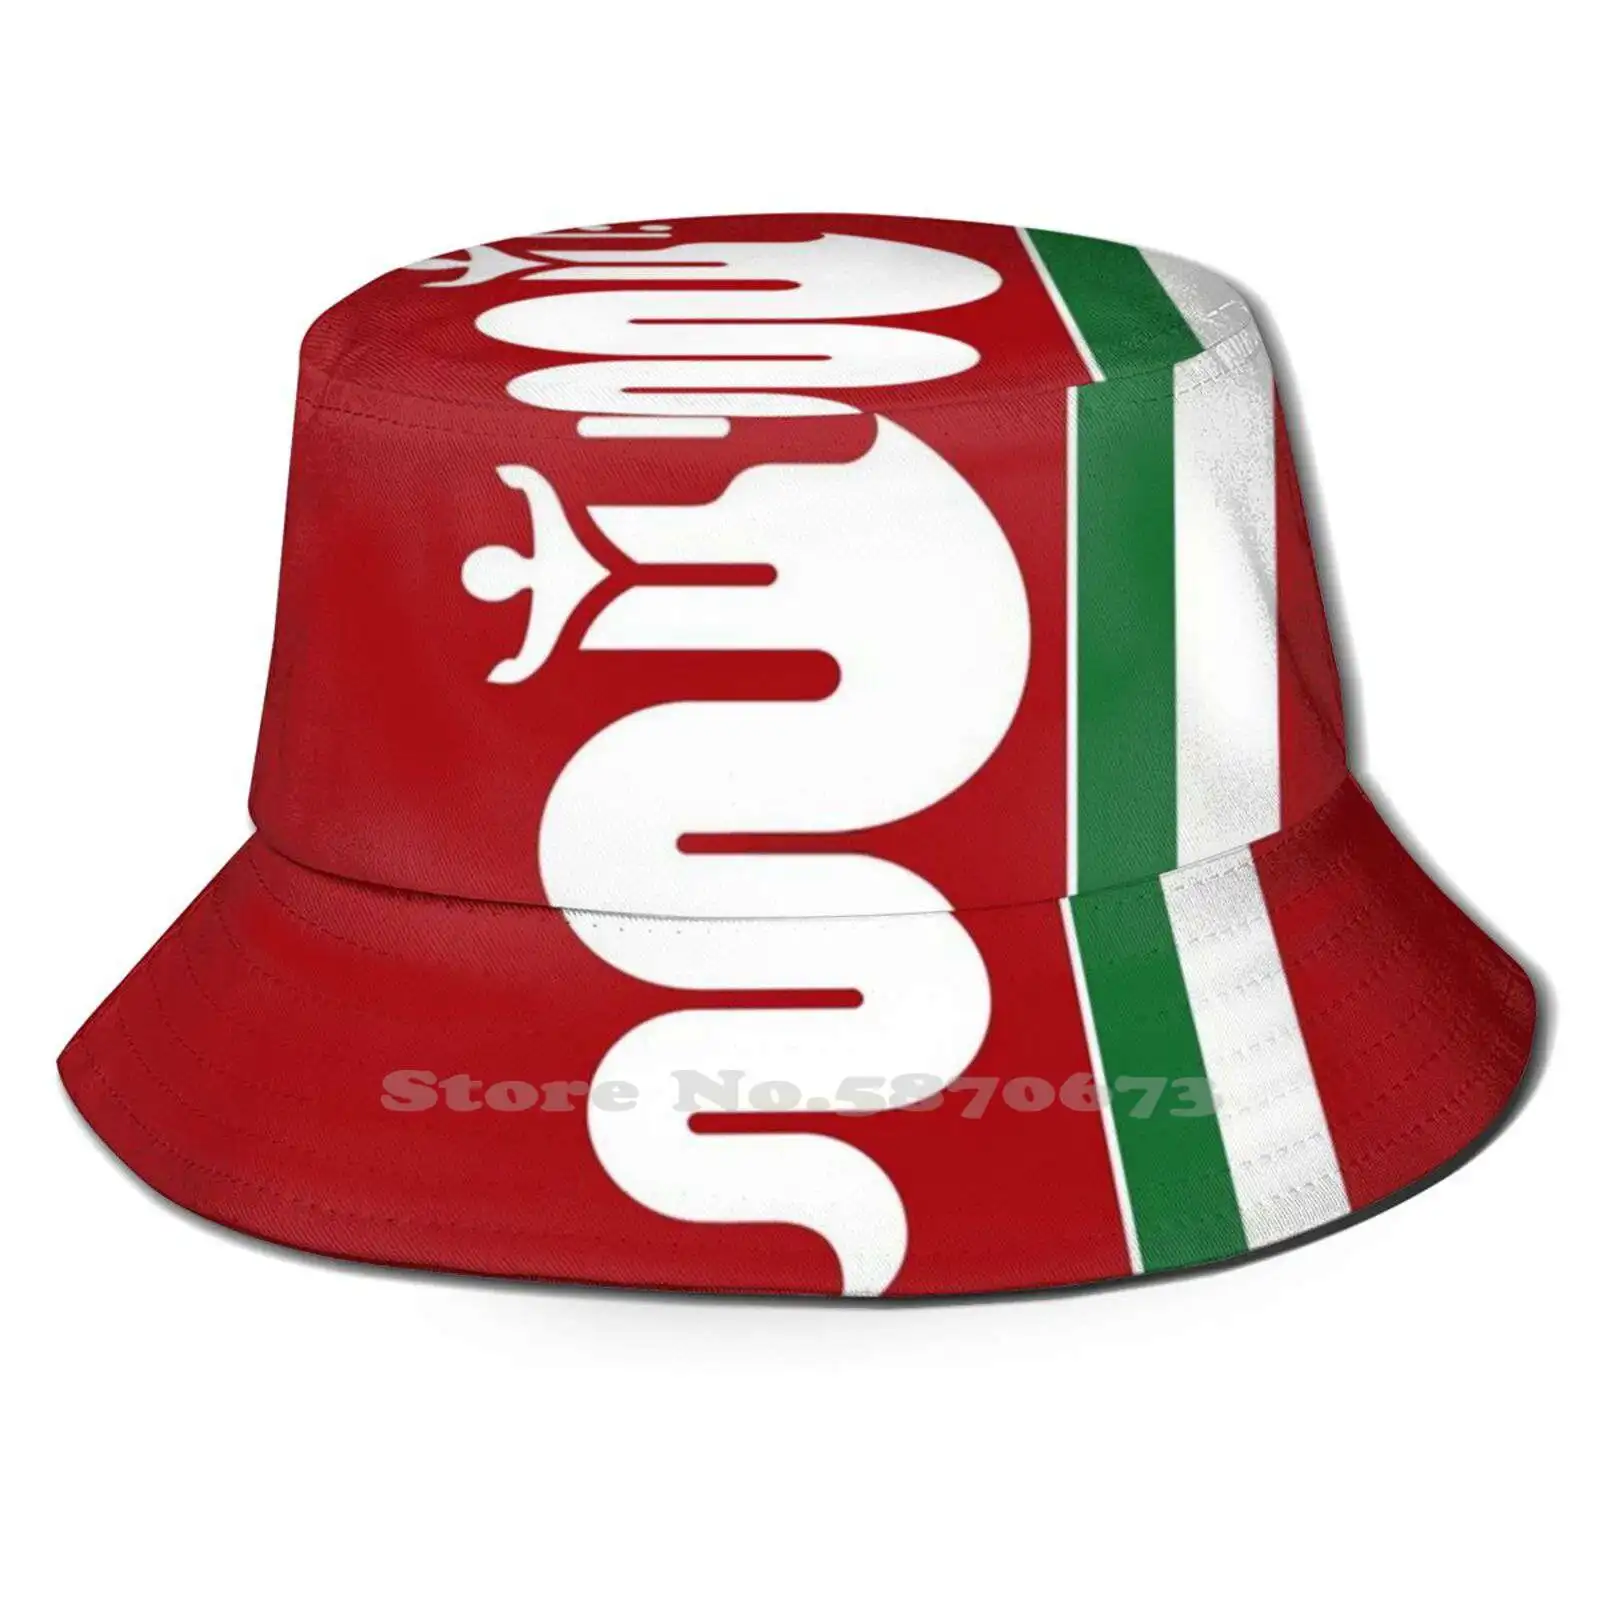 

Alfa Romeo bisсолона унисекс летняя фотосессия альфа-Ромео альфа-бисолона змея красный итальянский флаг Fiat шляпа от солнца Сердце Спорт